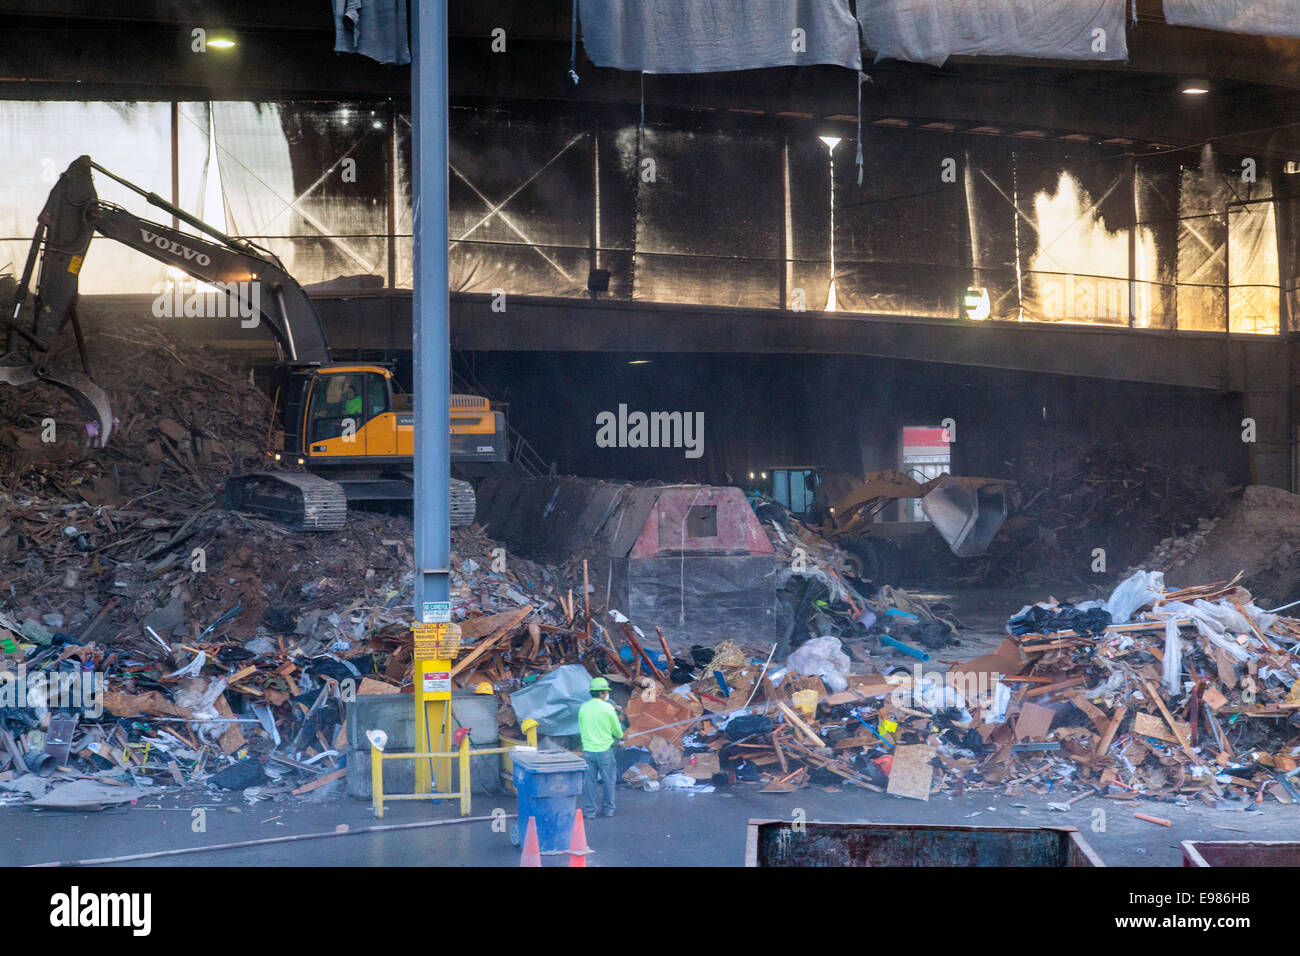 Les déchets sont triés par pelleteuse, le centre-ville de Los Angeles, Californie, USA Banque D'Images